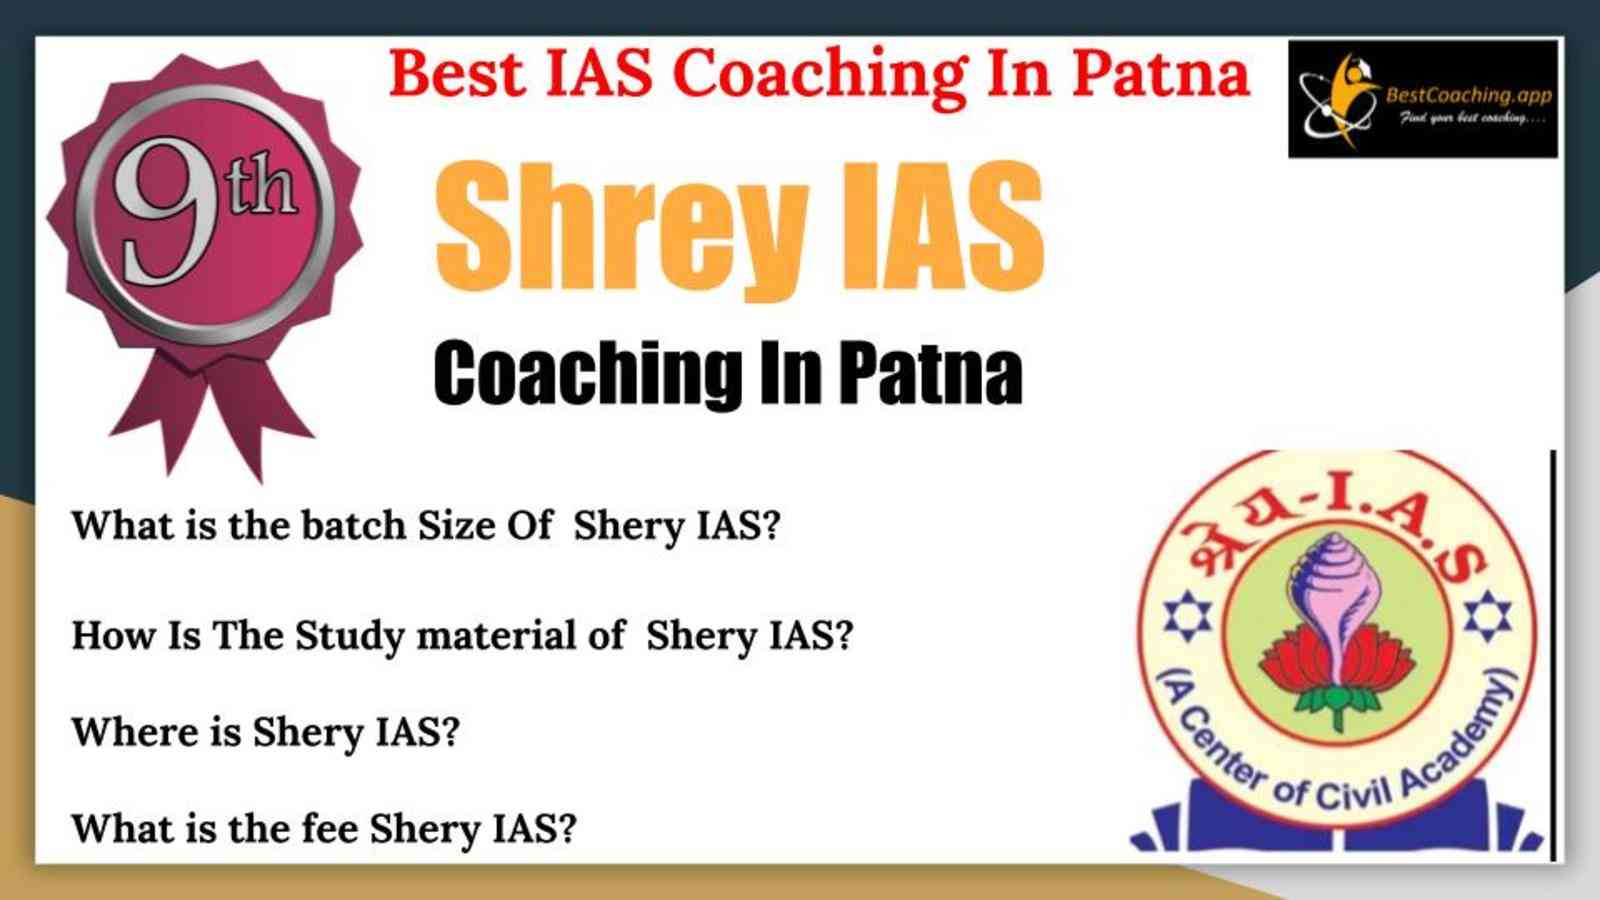 Best IAS Coaching Institute In Patna